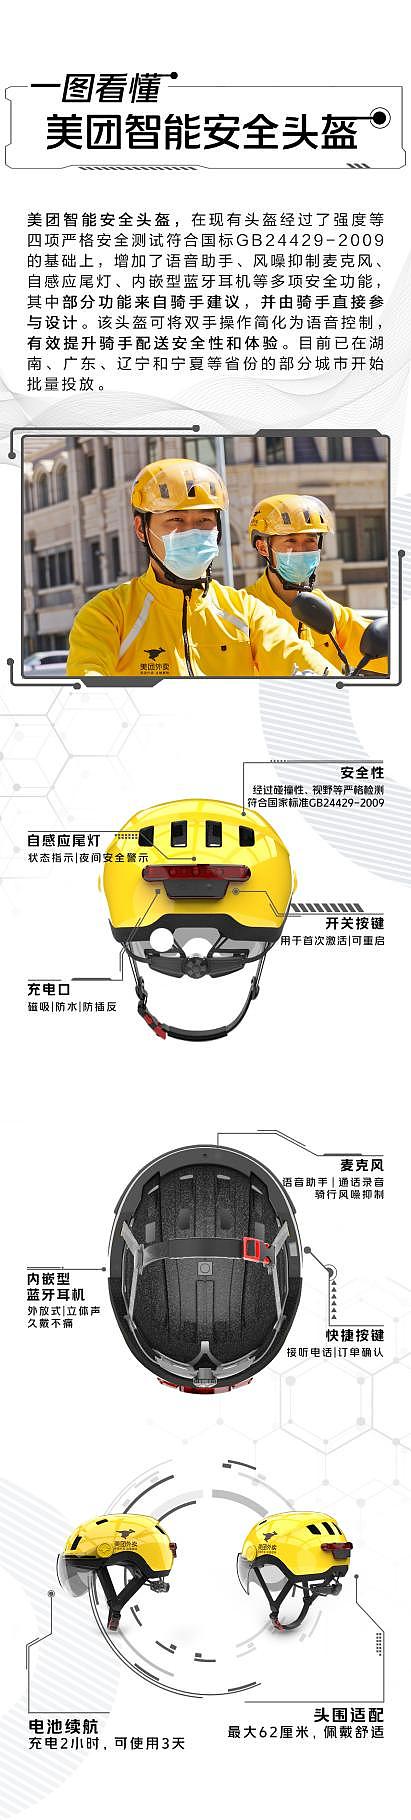 提升骑手安全 美团外卖批量投放智能安全头盔 骑手可语音处理订单 - 2